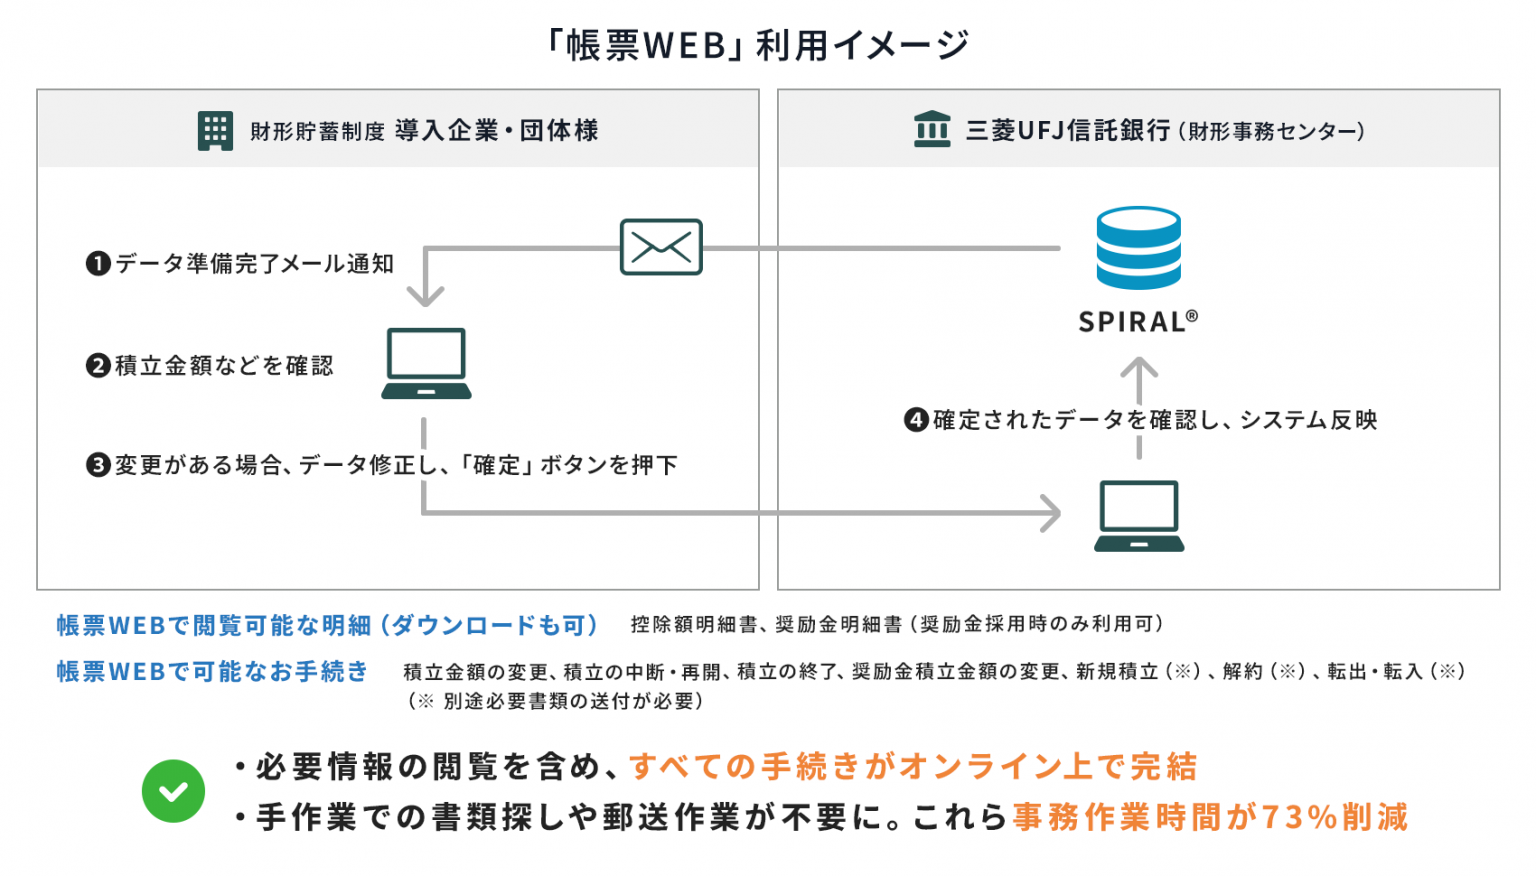 【導入事例】三菱UFJ信託銀行の財形貯蓄手続き業務をSPIRALでオンライン化